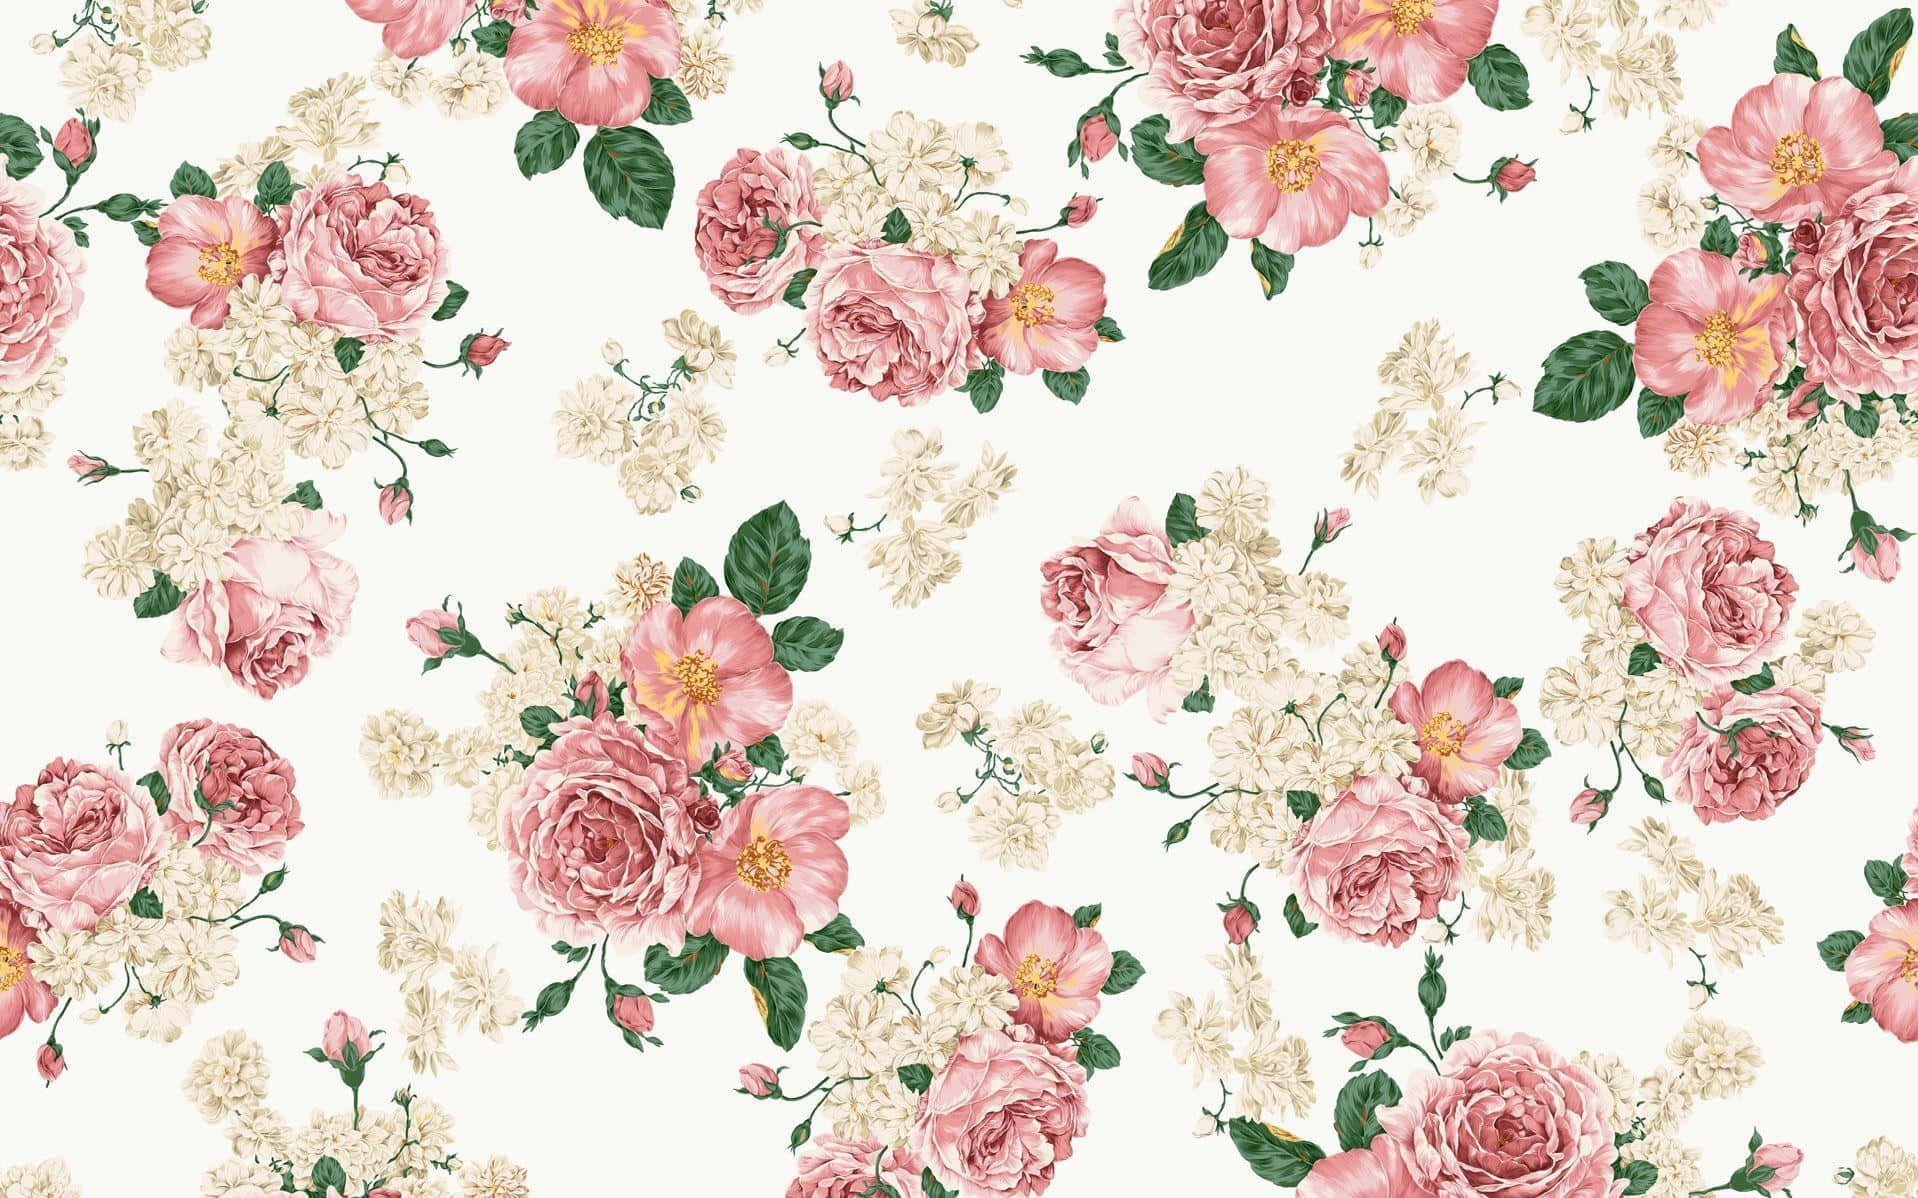 A Vibrant Vintage Floral Background